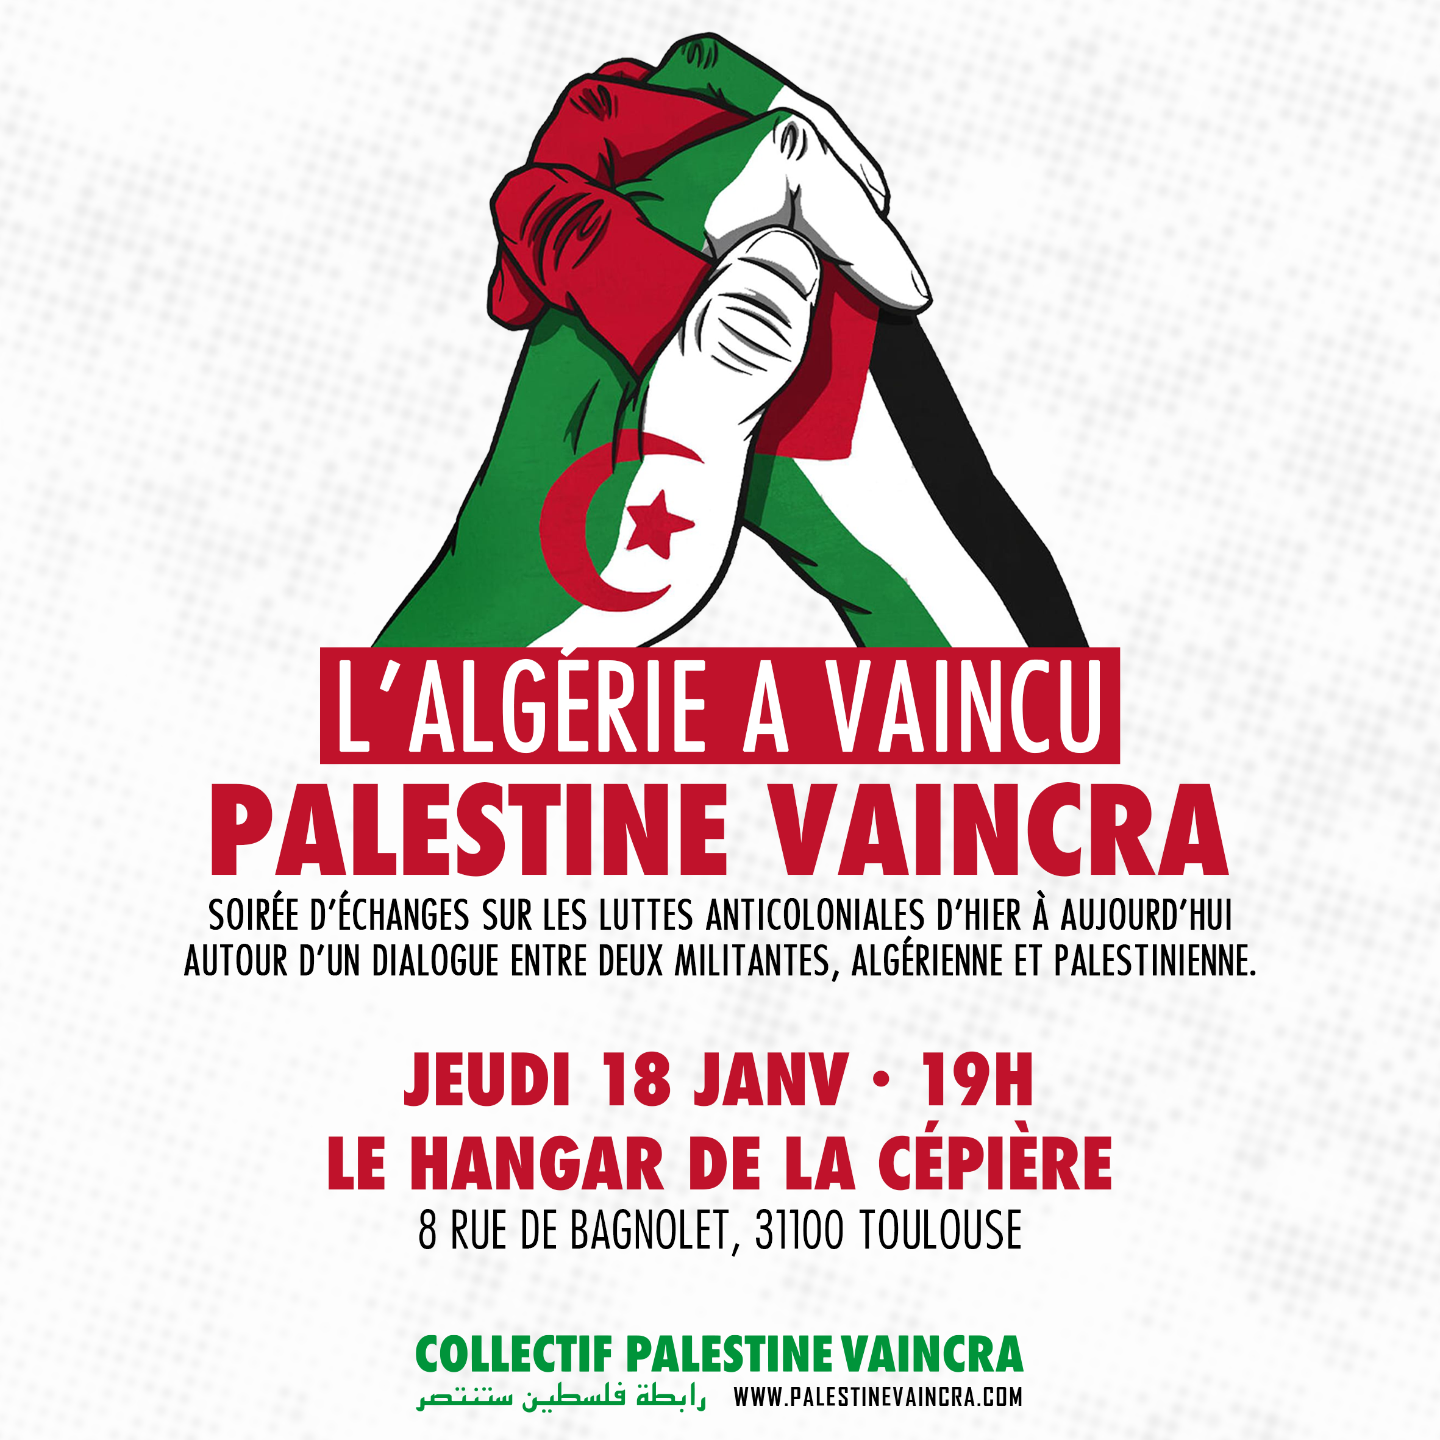 Un visuel montrant deux mains serrées, une au couleurs du drapeau palestinien, une aux couleurs du drapeau algérien. Les informations sont celles du billet.